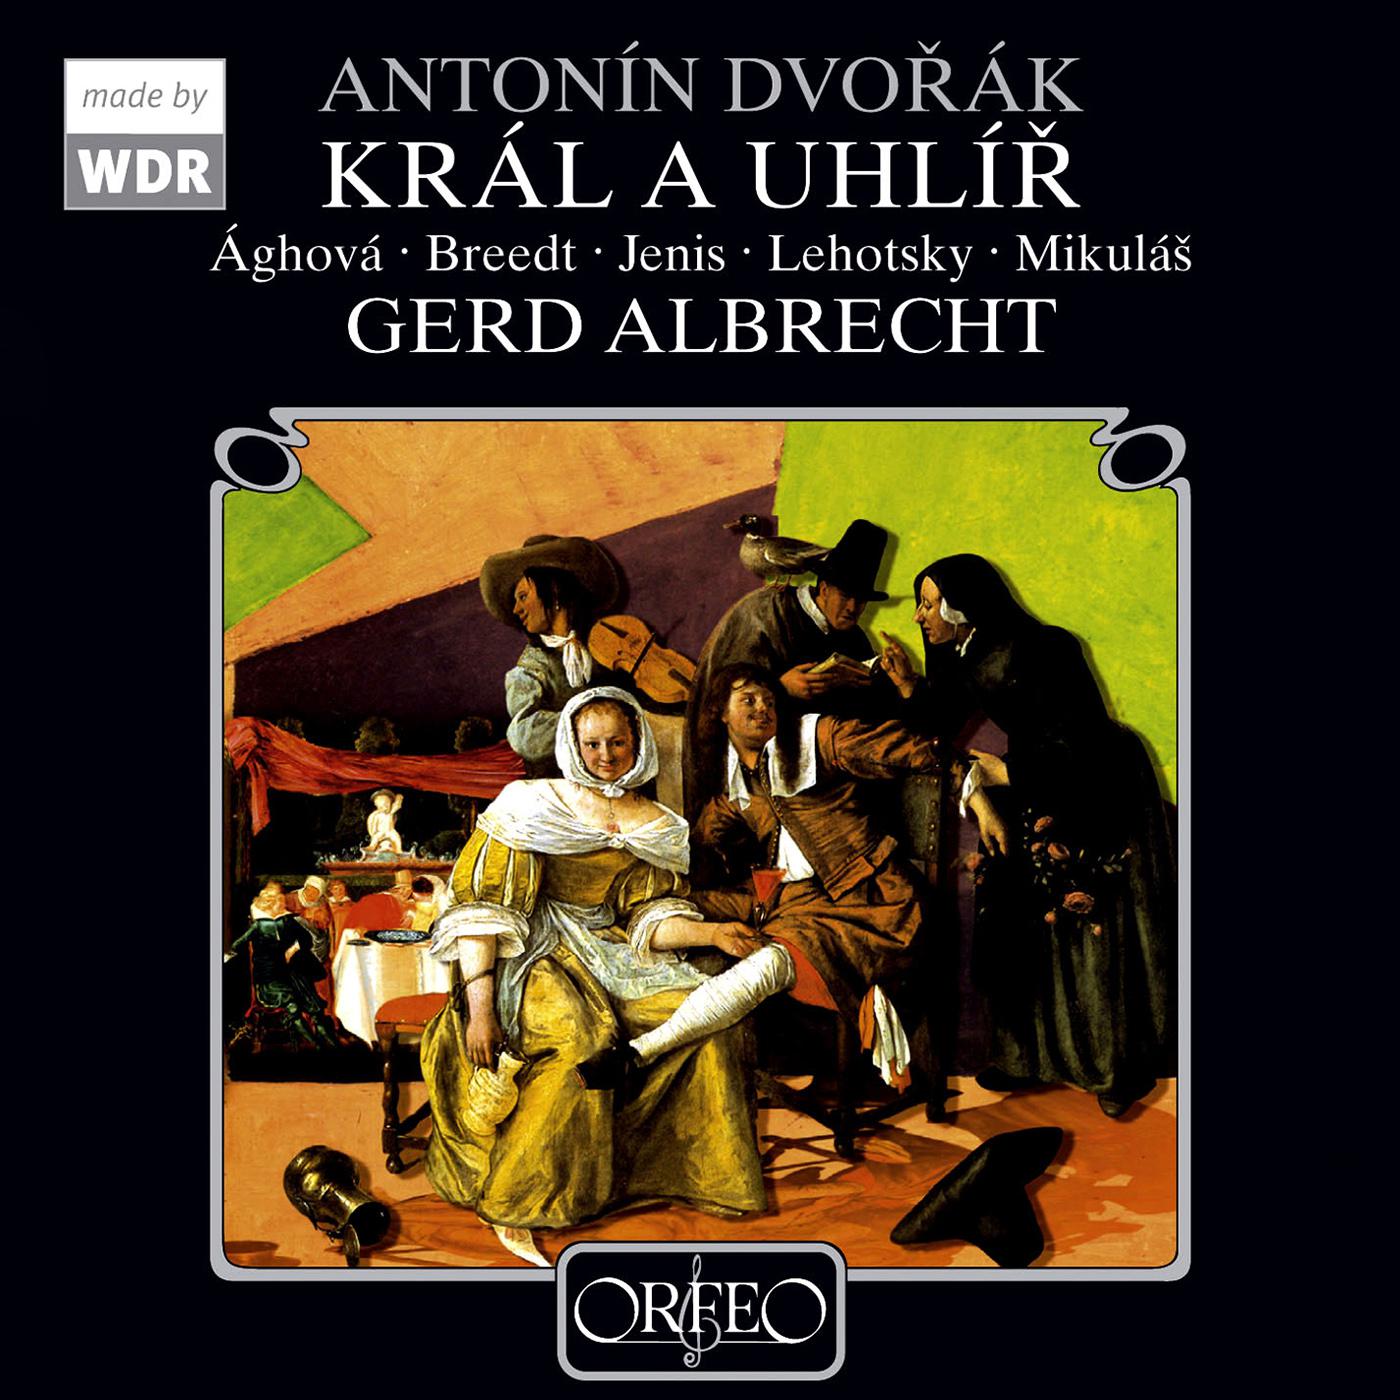 Gerd Albrecht - Kral a uhlir (King and Charcoal Burner), B. 21:Act I Scene 6: Dovolte nam vitat pana (Kohlerinnen und Kohler, Matej, Konig, Anna)